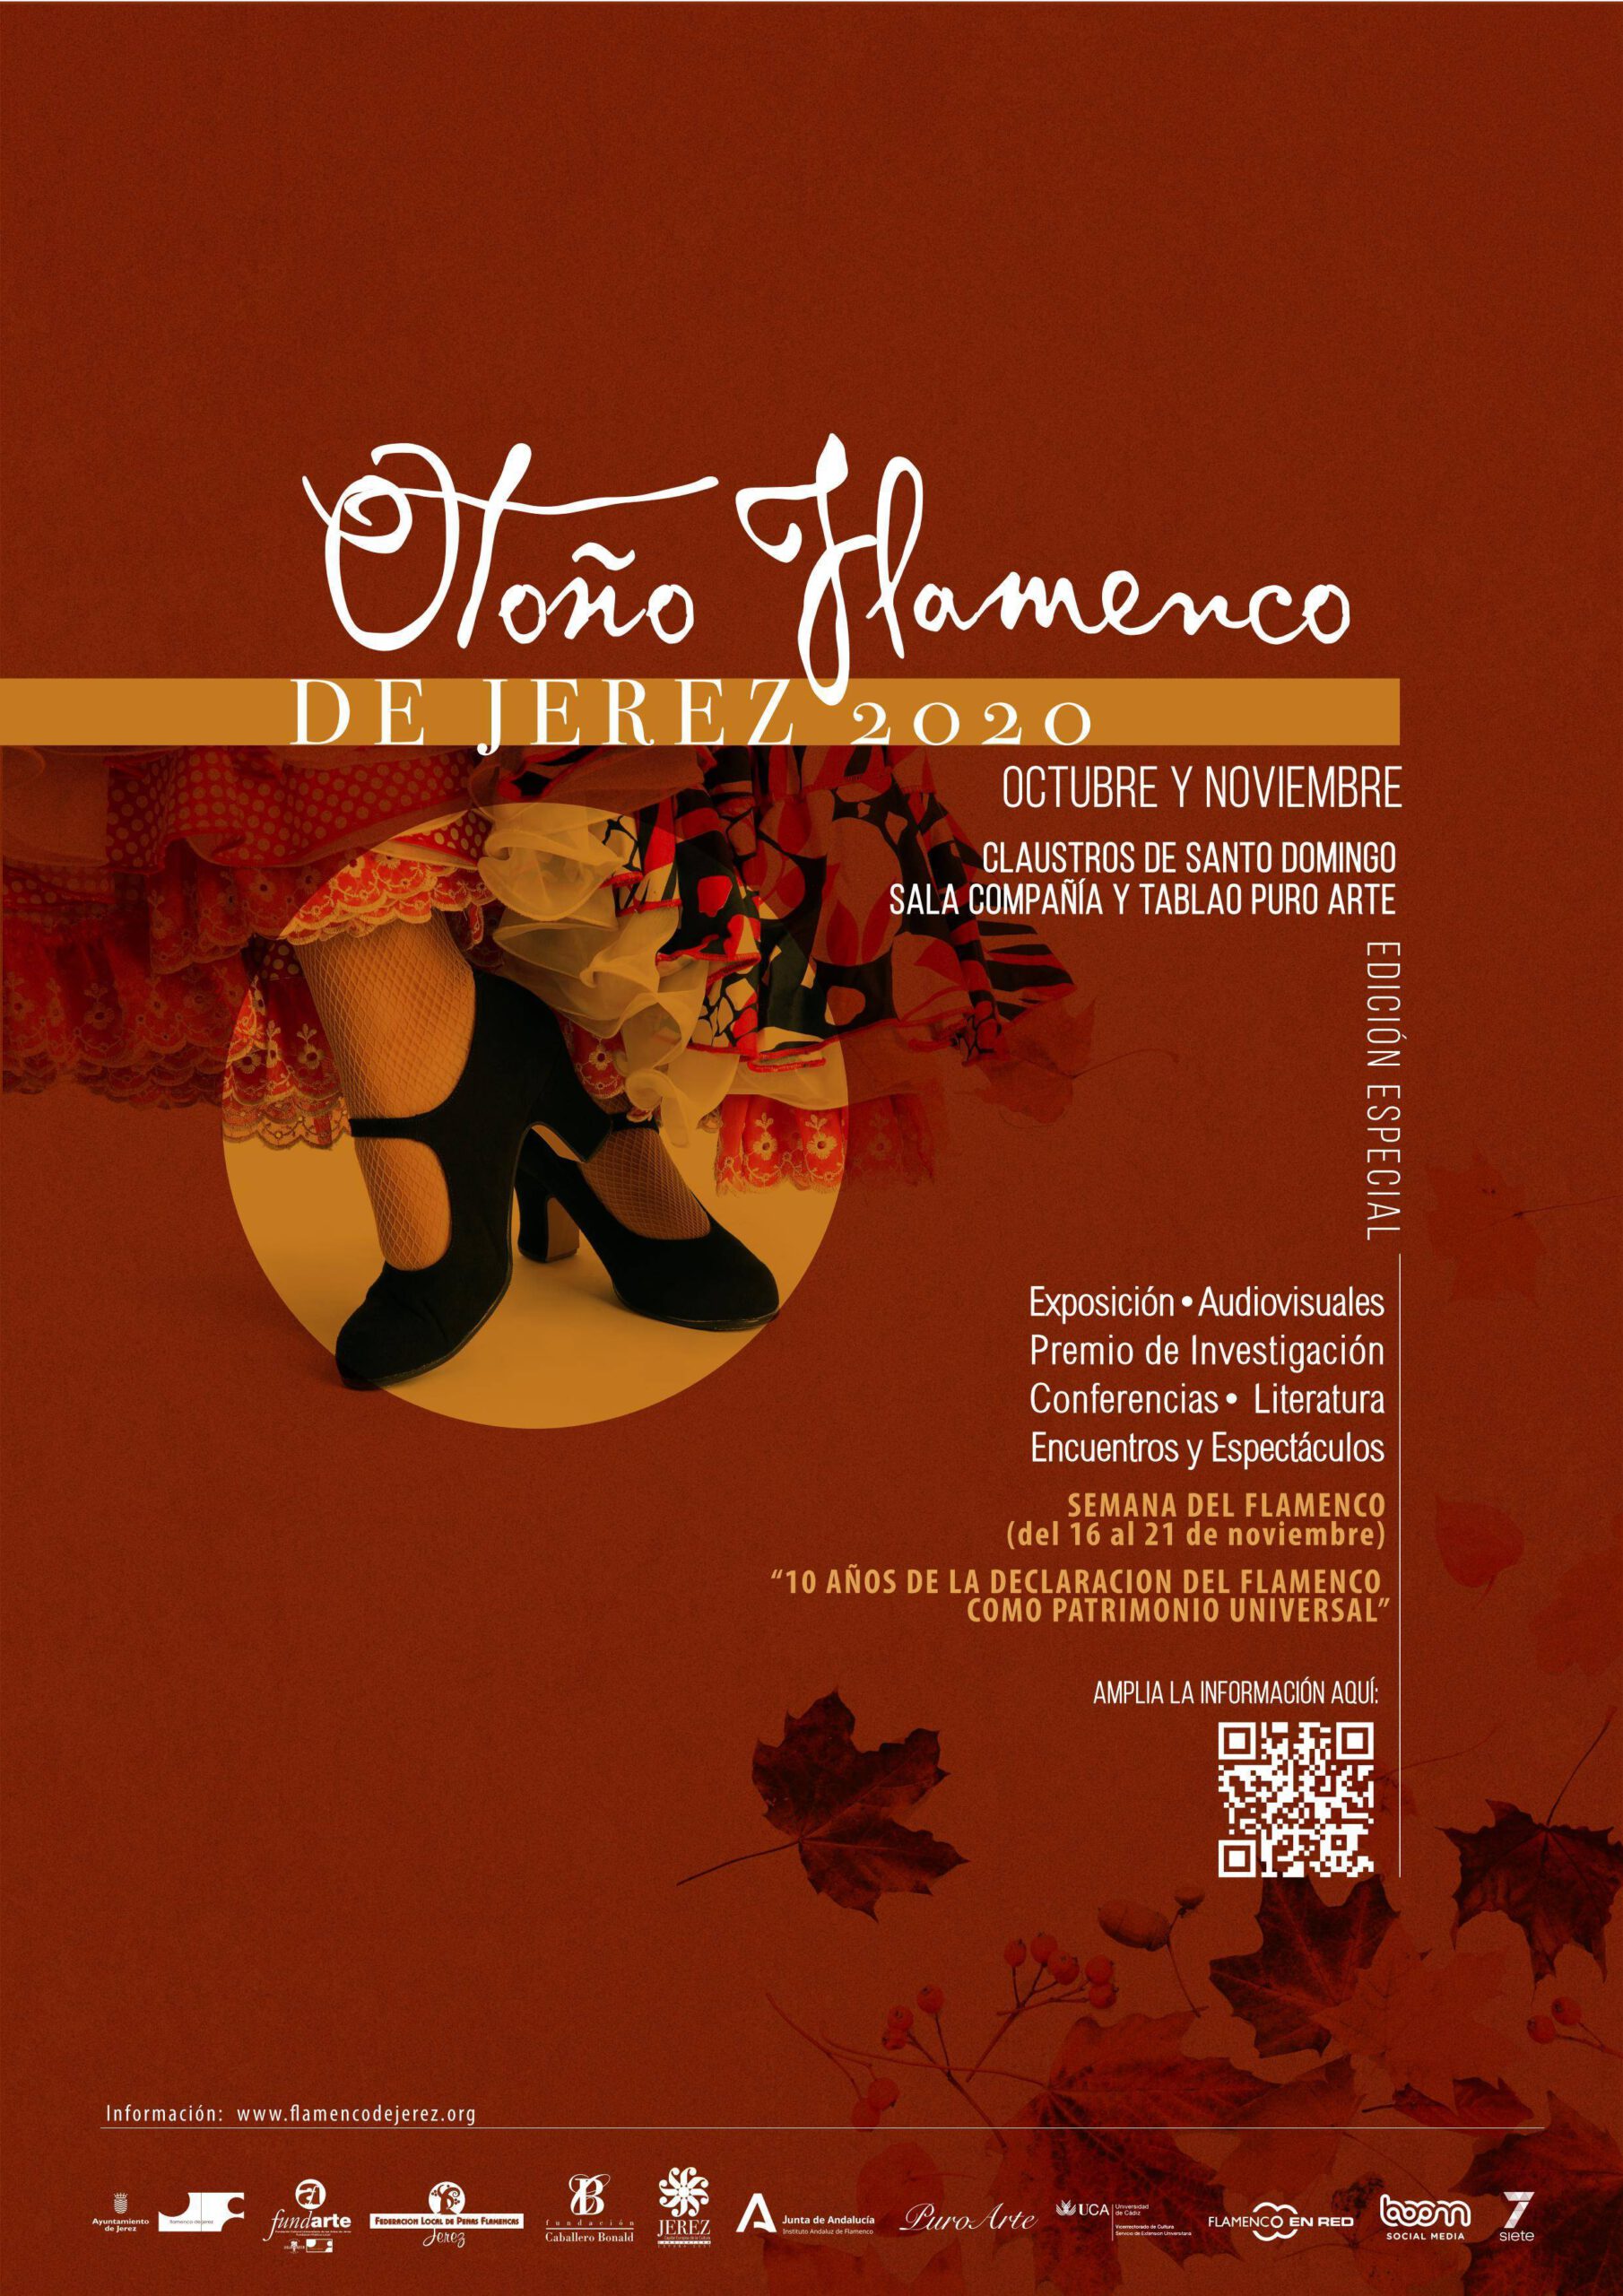 Otoño flamenco (2020) - Jerez de la Frontera (Cádiz)